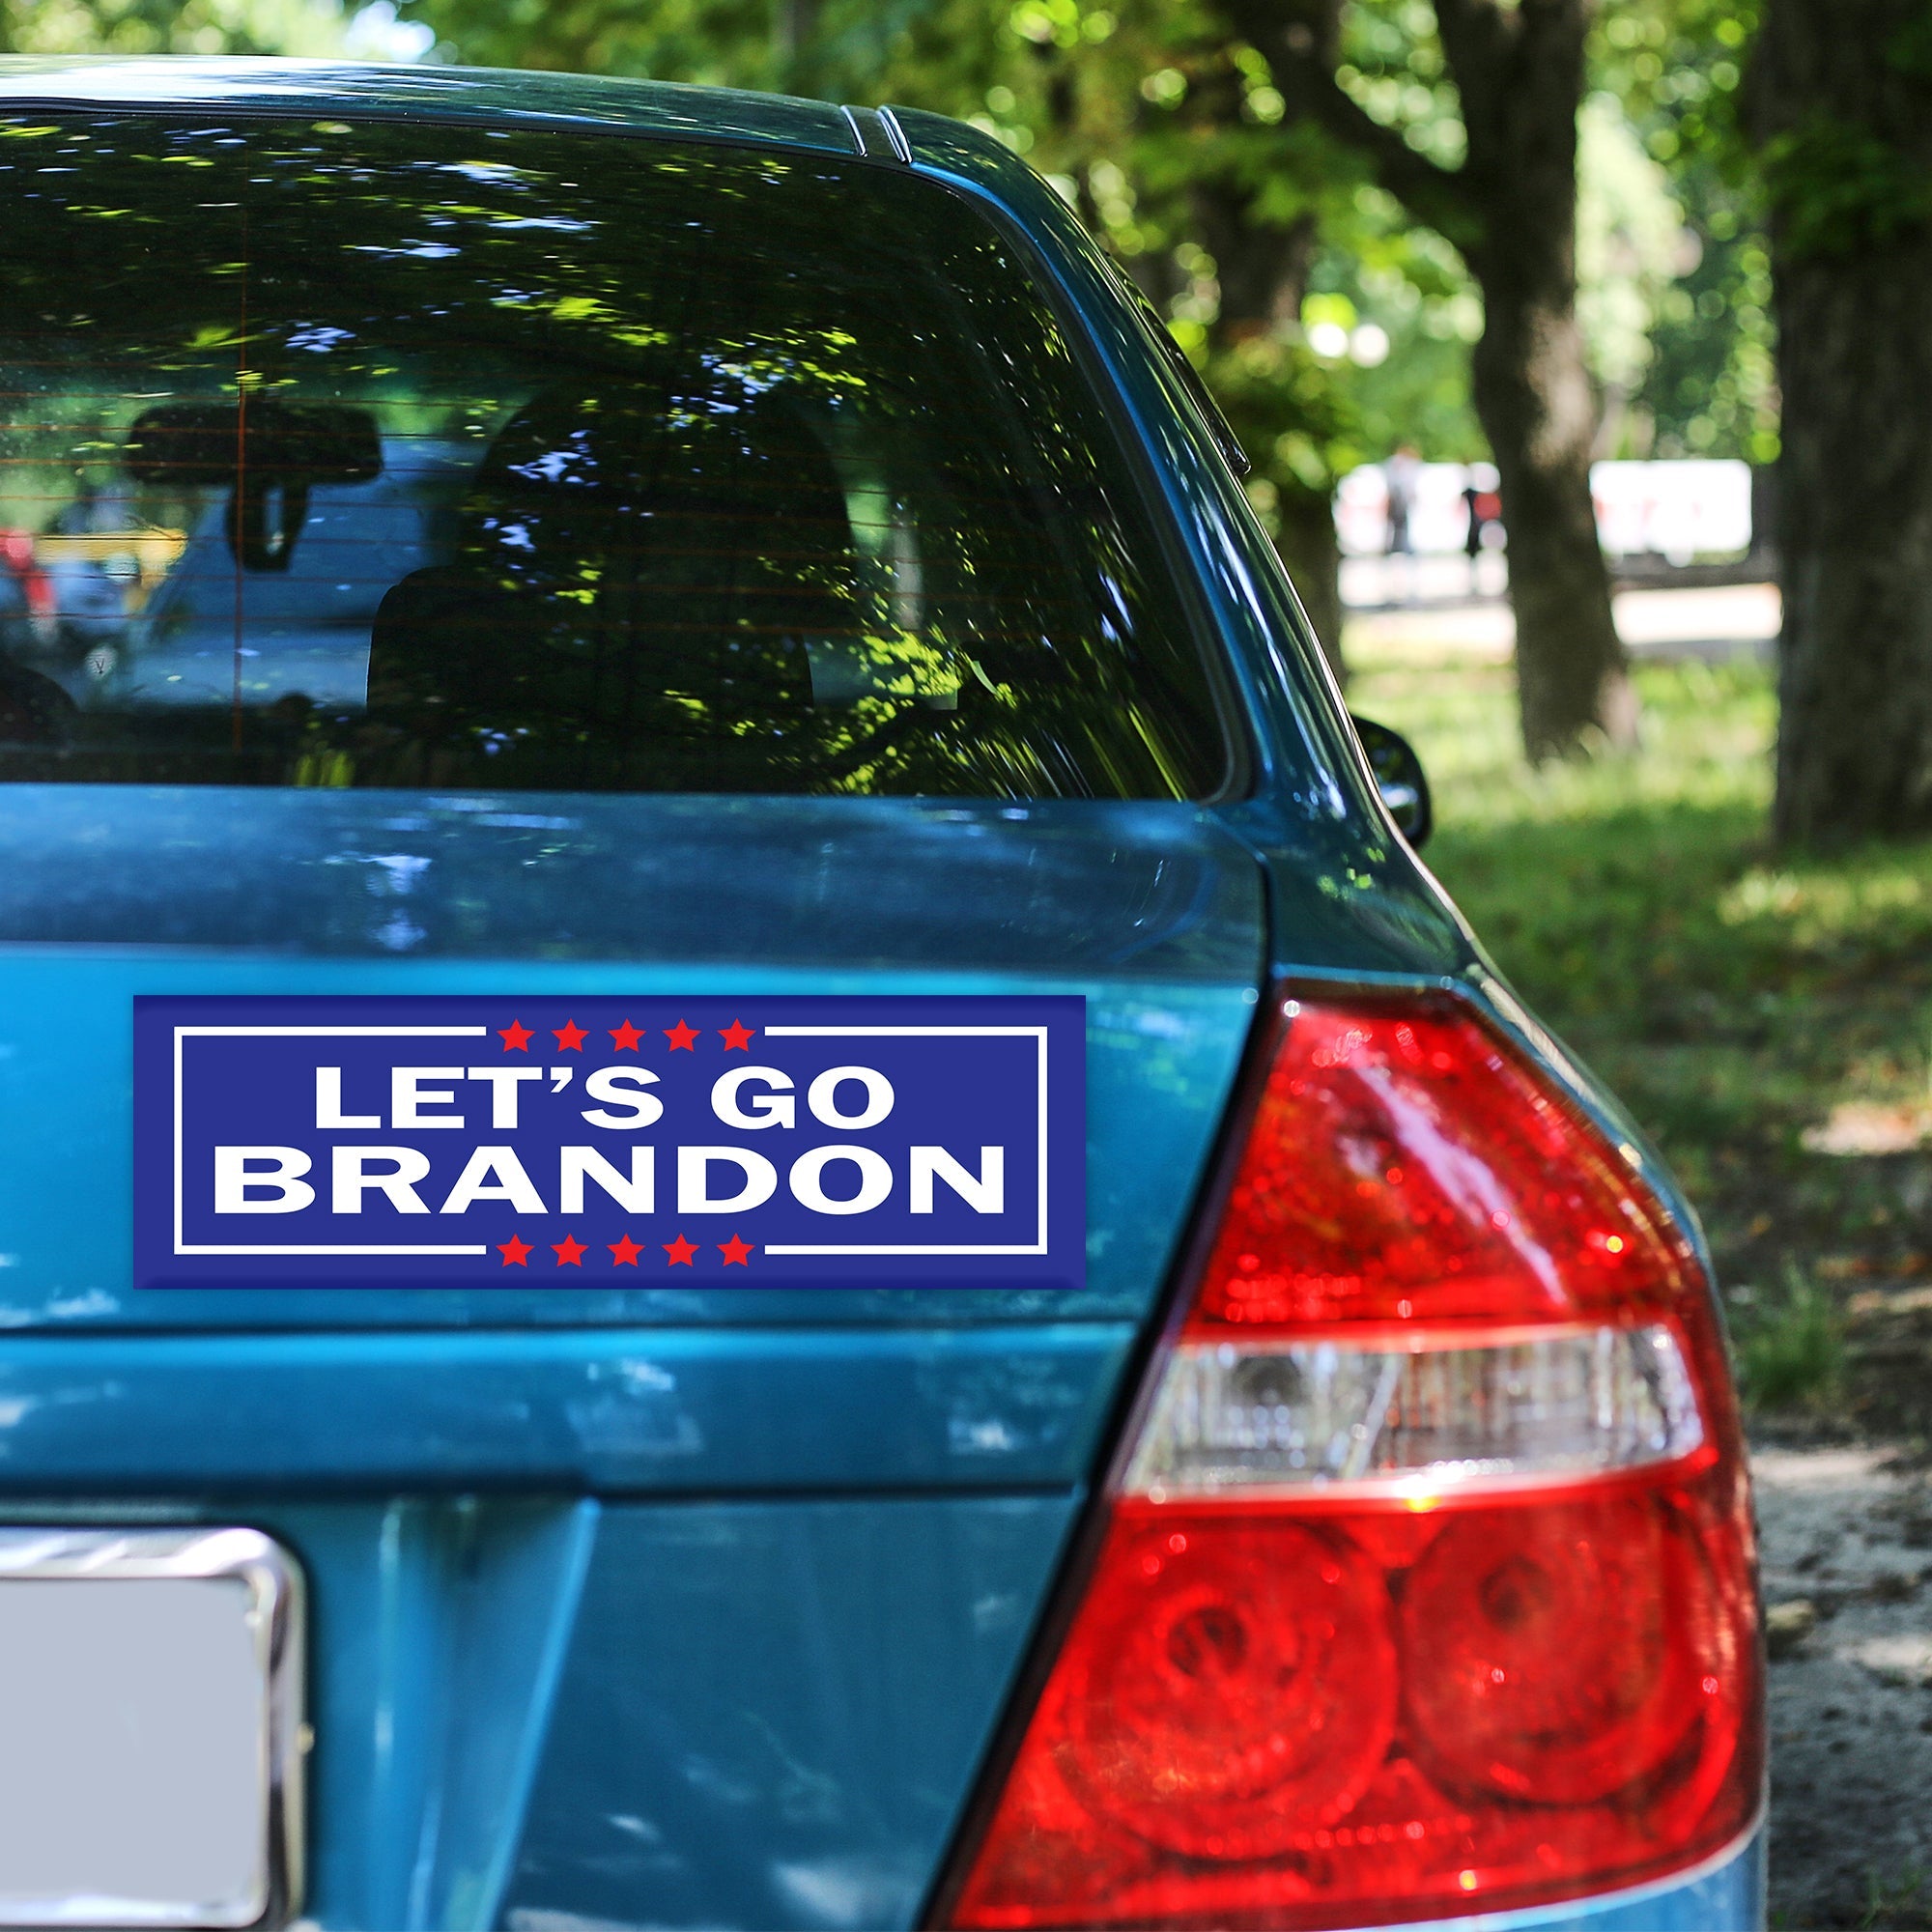 Let's Go Brandon Vinyl Car Sticker